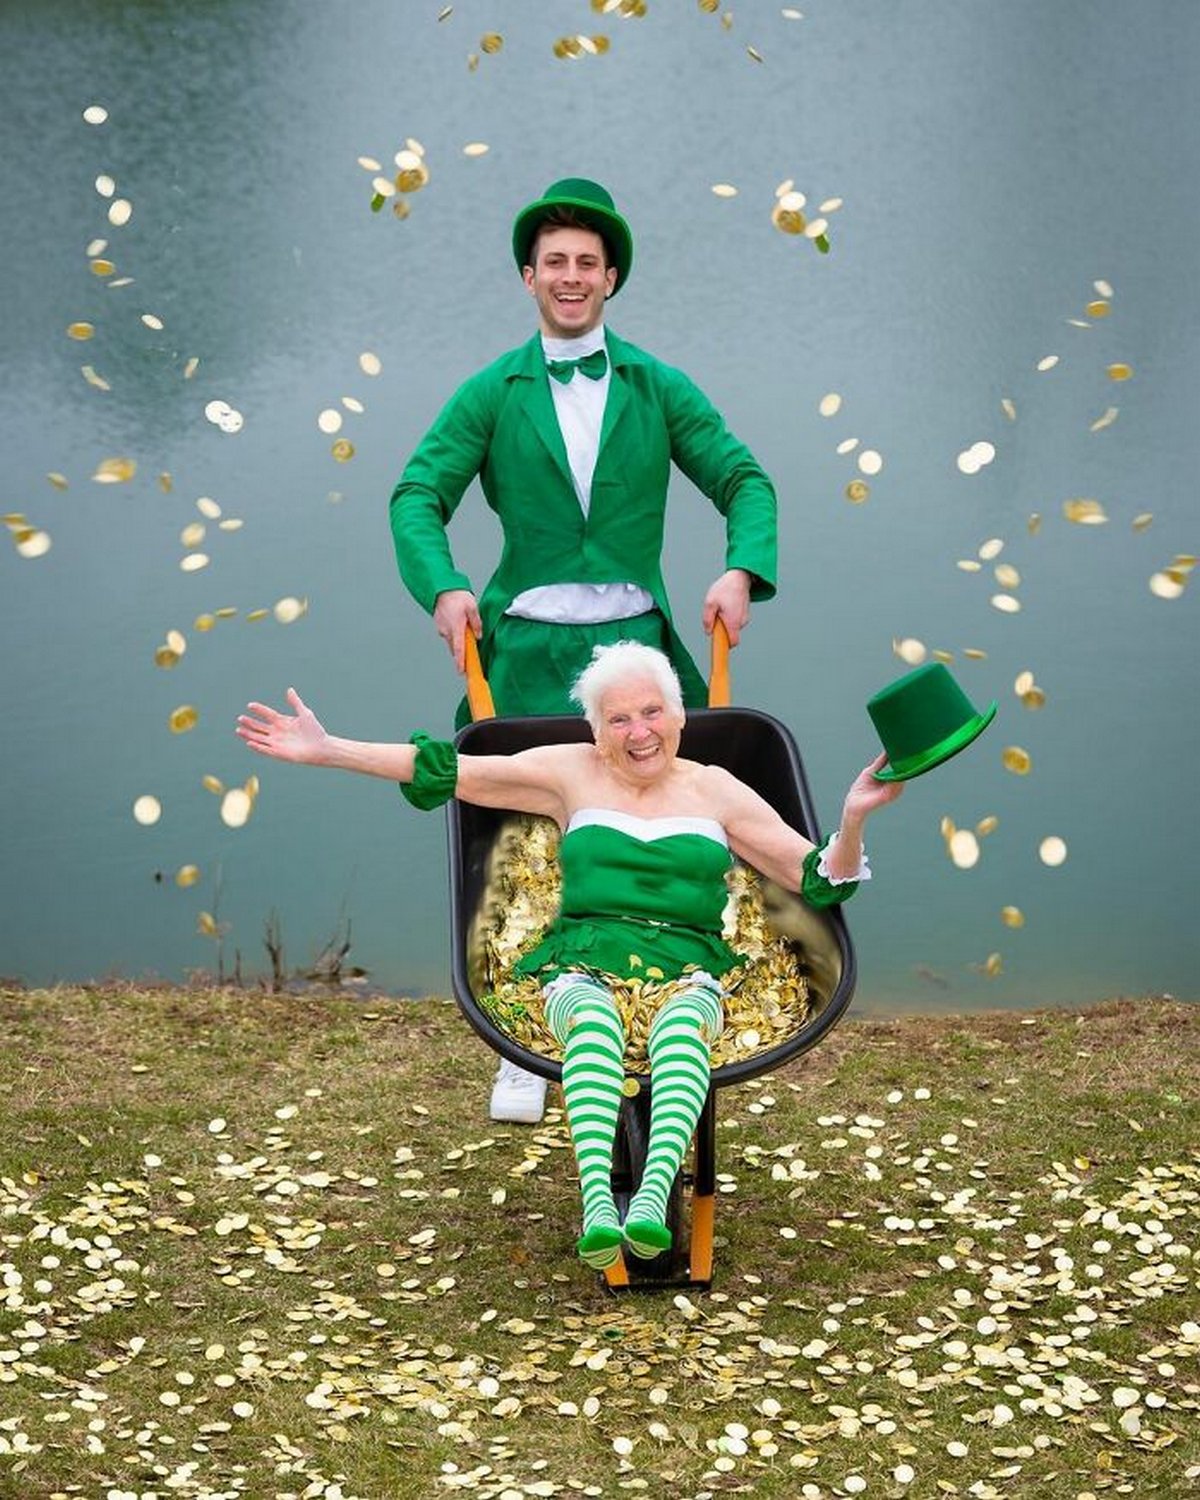 Cette grand-mère de 95 ans et son petit-fils prouvent que le plaisir n&#8217;a pas d&#8217;âge grâce à leurs costumes hilarants